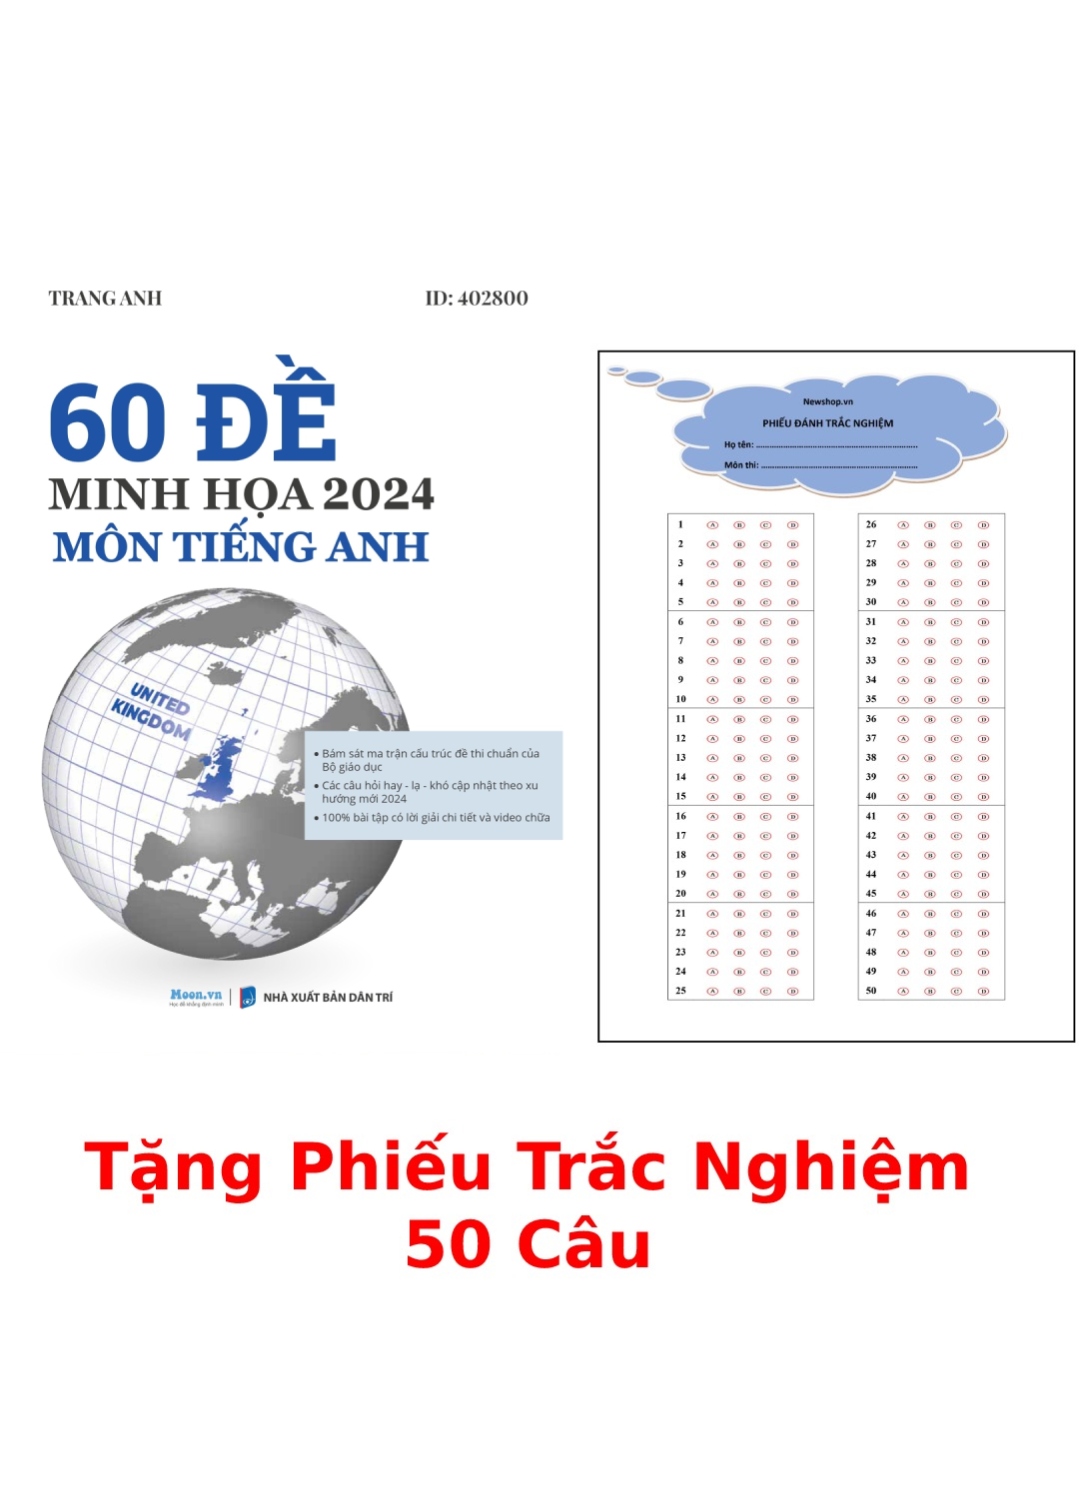 60 Đề Minh Hoạ 2024 Môn Tiếng Anh + Tặng Phiếu Trắc Nghiệm 50 Câu